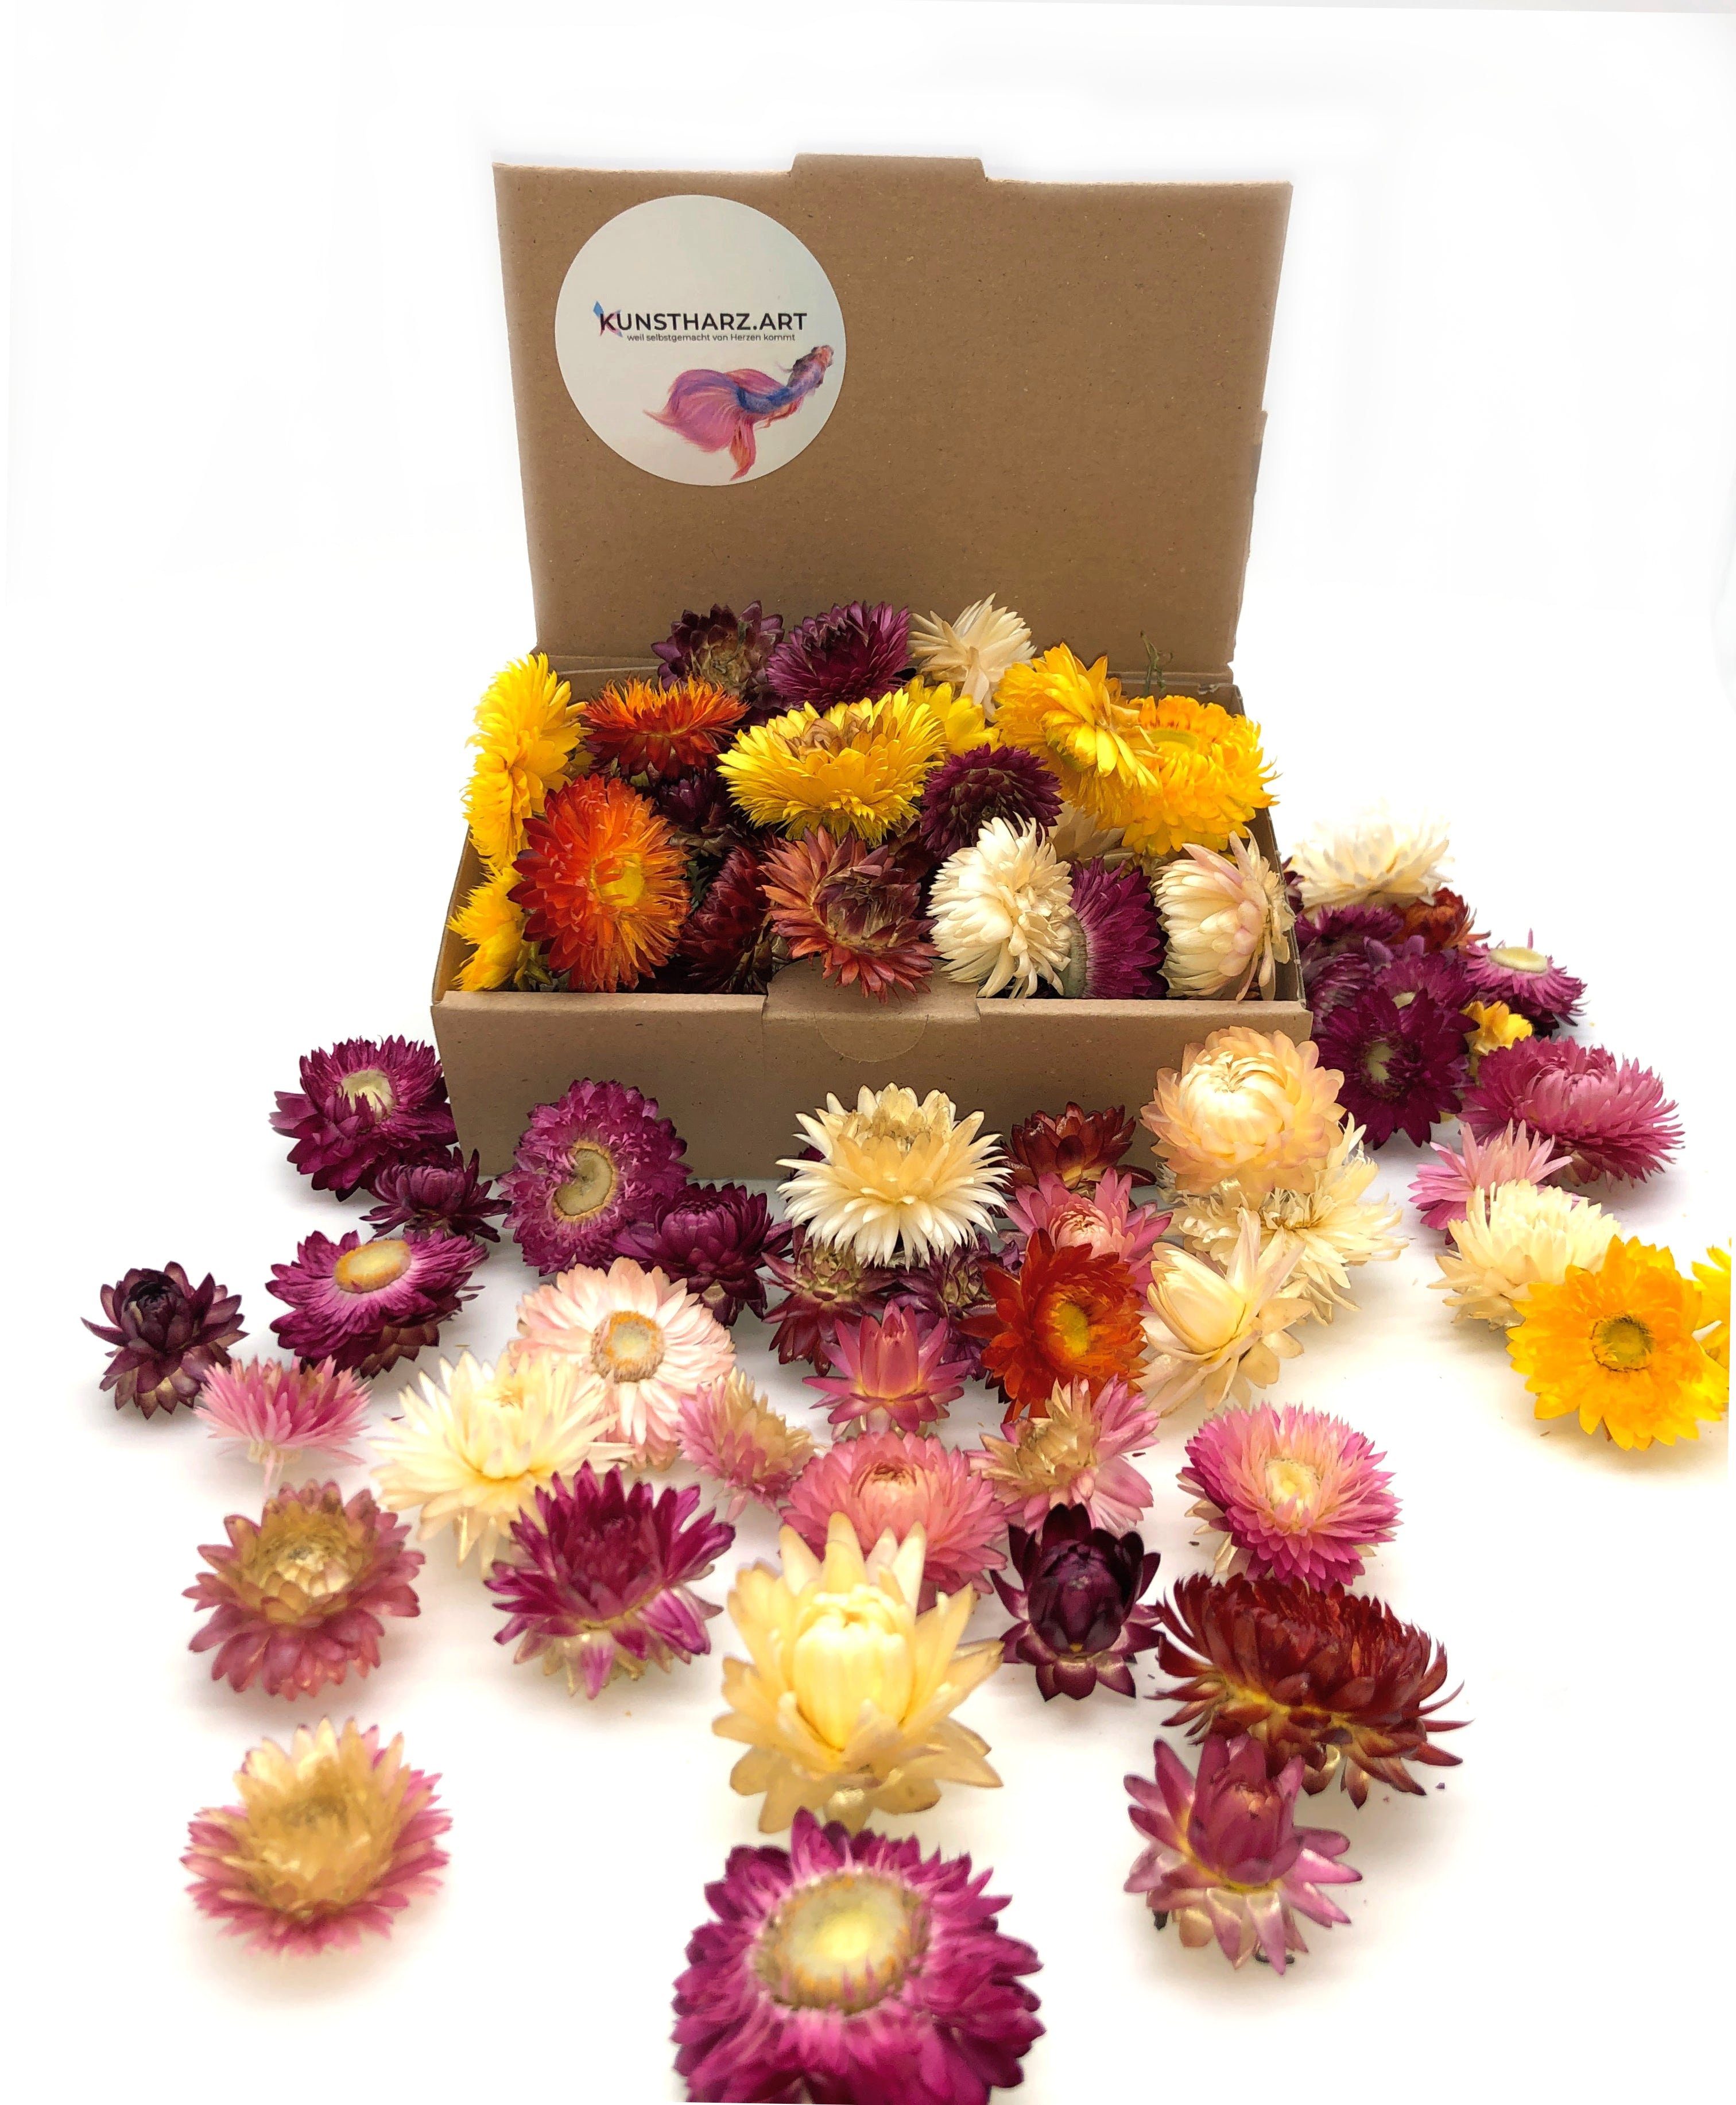 Trockenblume Strohblumenköpfe Helichrysum getrocknet: gemischt oder farblich sortiert - Mix, Kunstharz.Art